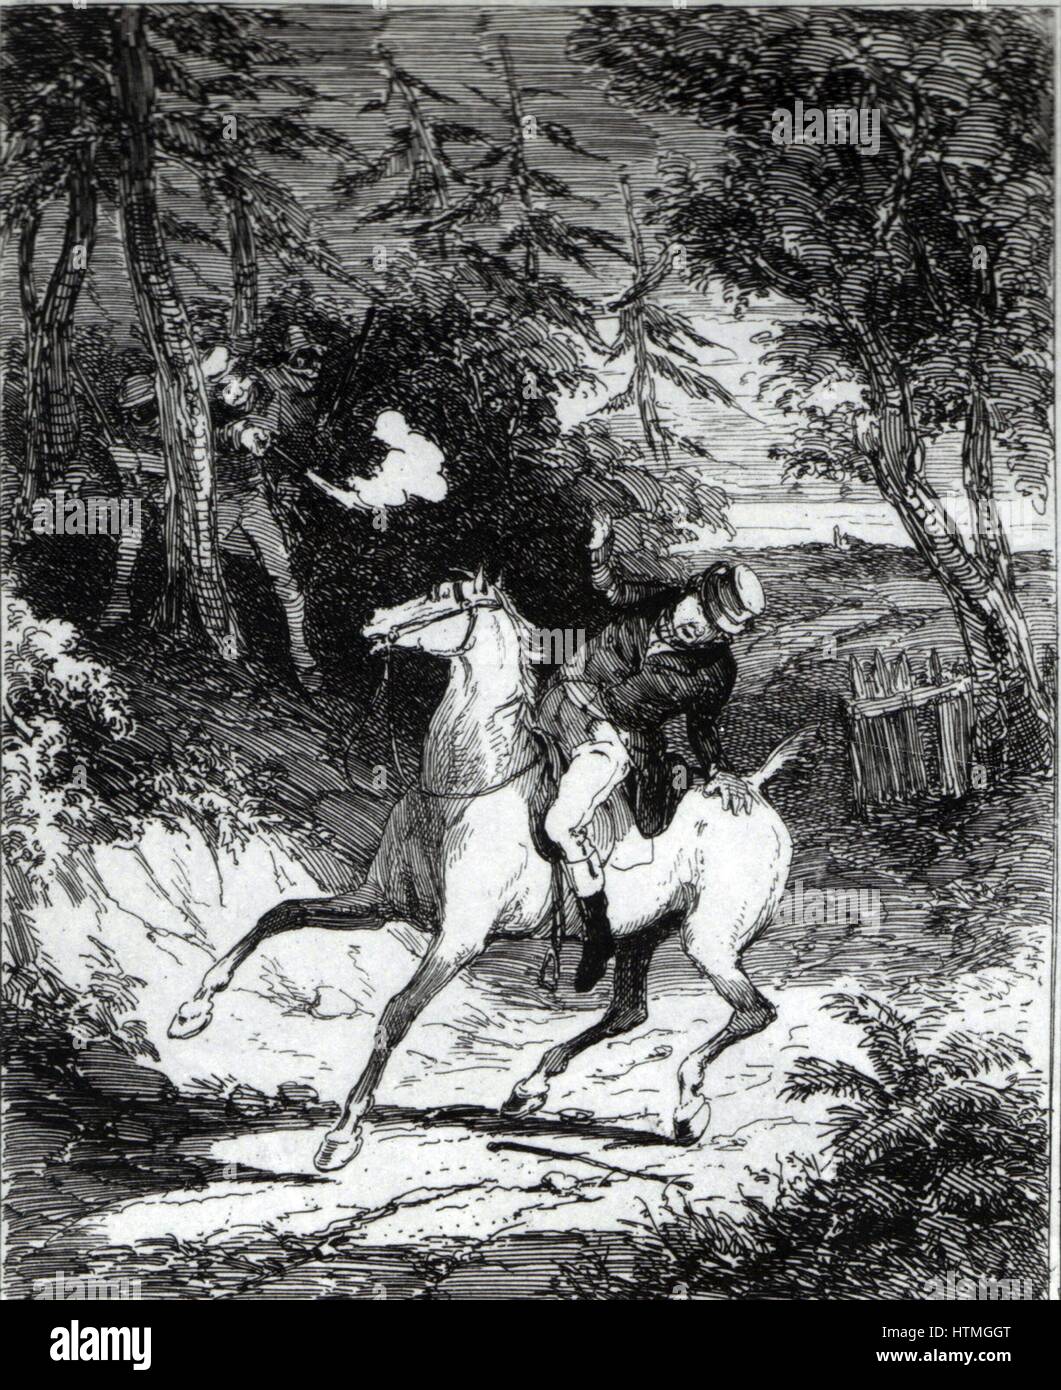 William Horsfall, un commerciante dello Yorkshire e produttore, assassinati dai luddisti vicino a Huddersfield, 1812. Incisione da Camden Pelham "Le cronache del crimine", Londra 1887. Illustrazione di 'Phiz' (Hablot Knight Browne). Foto Stock